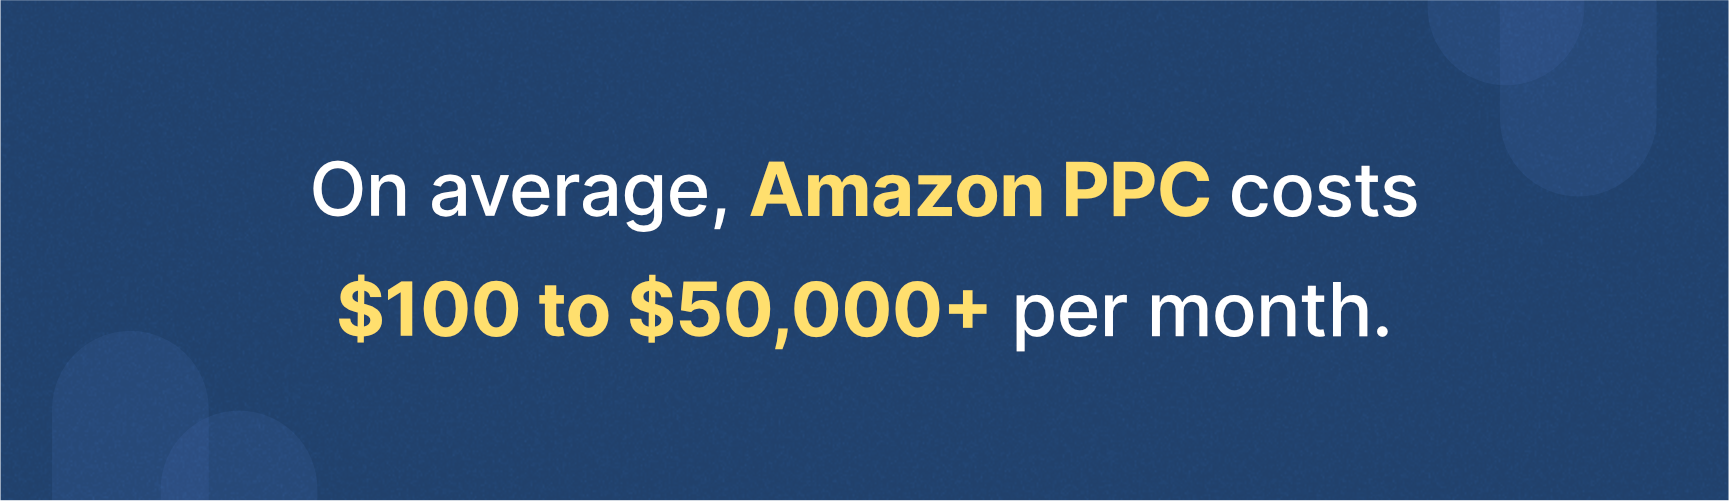 亚马逊平均PPC成本